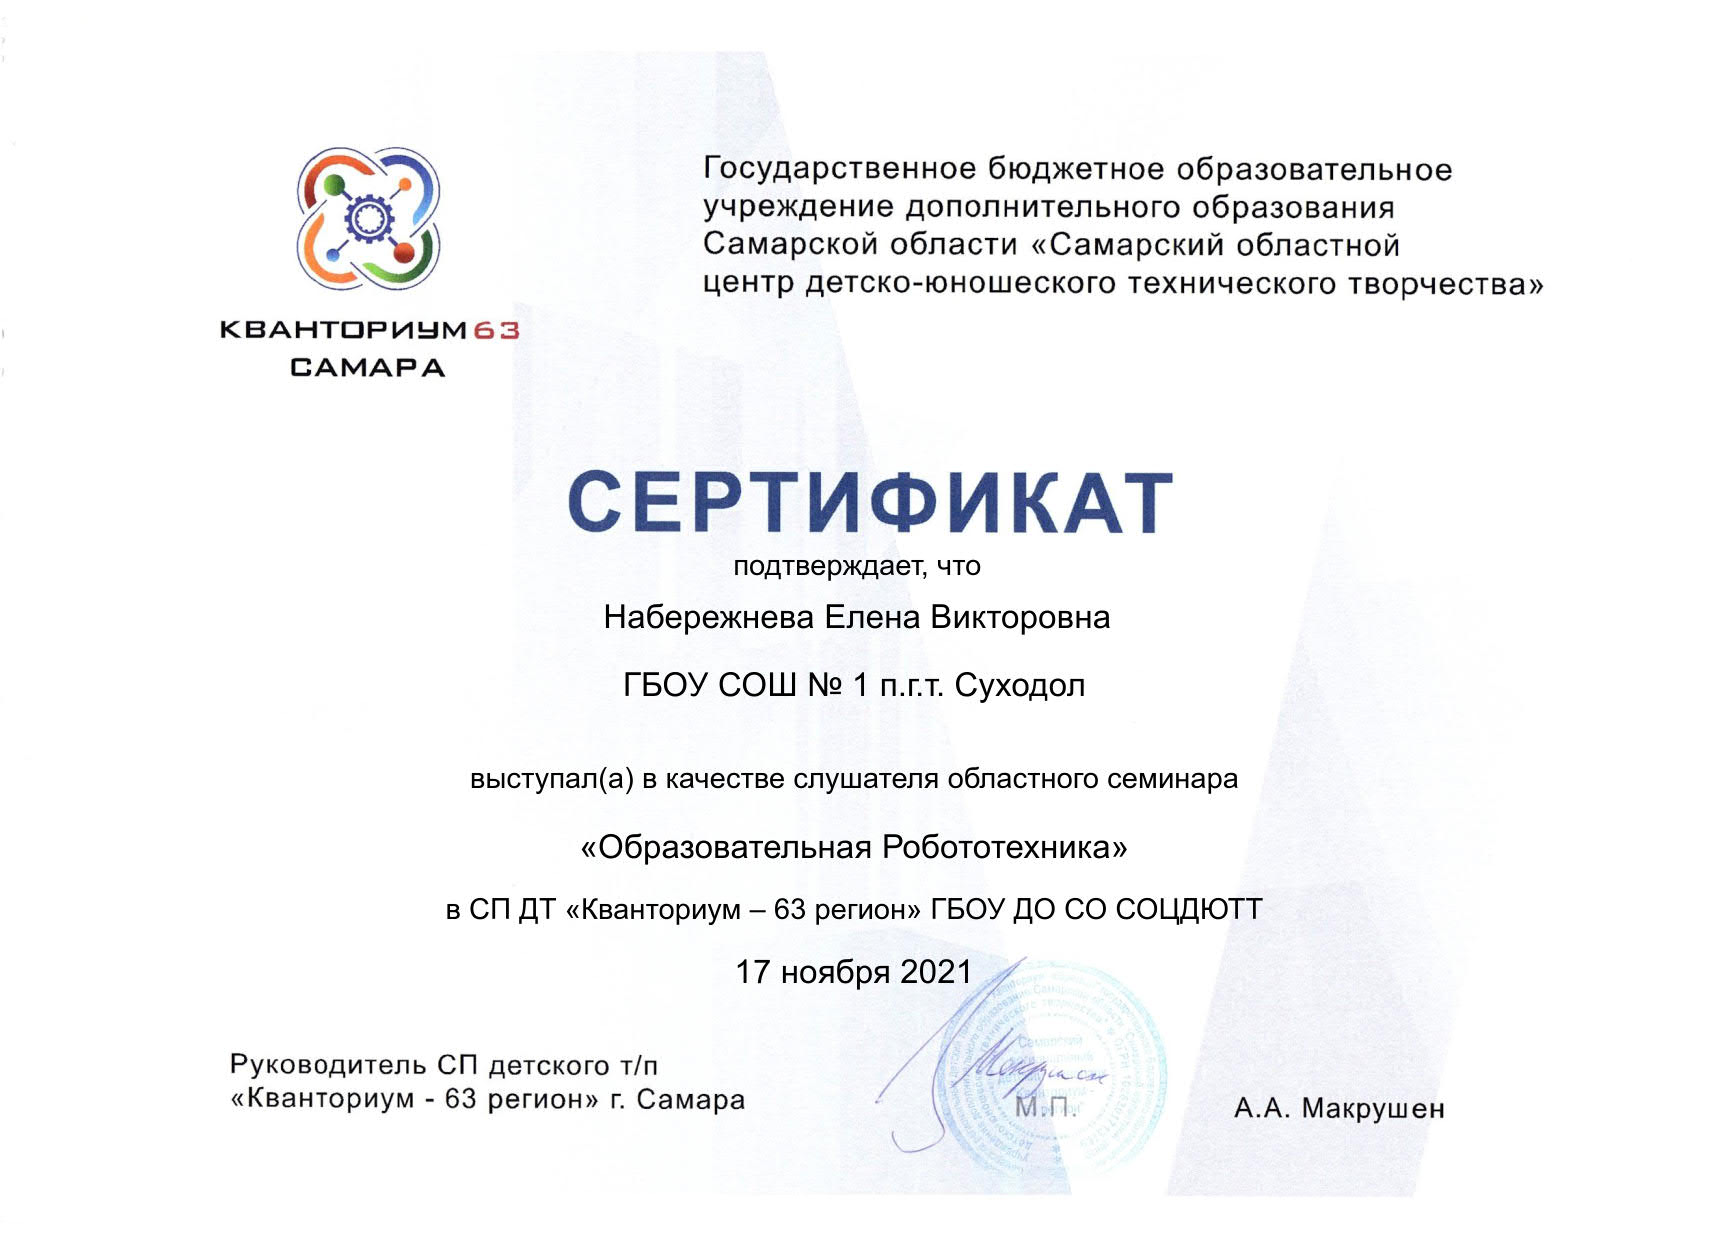 Сертификат Кванториум 63 Набережнева